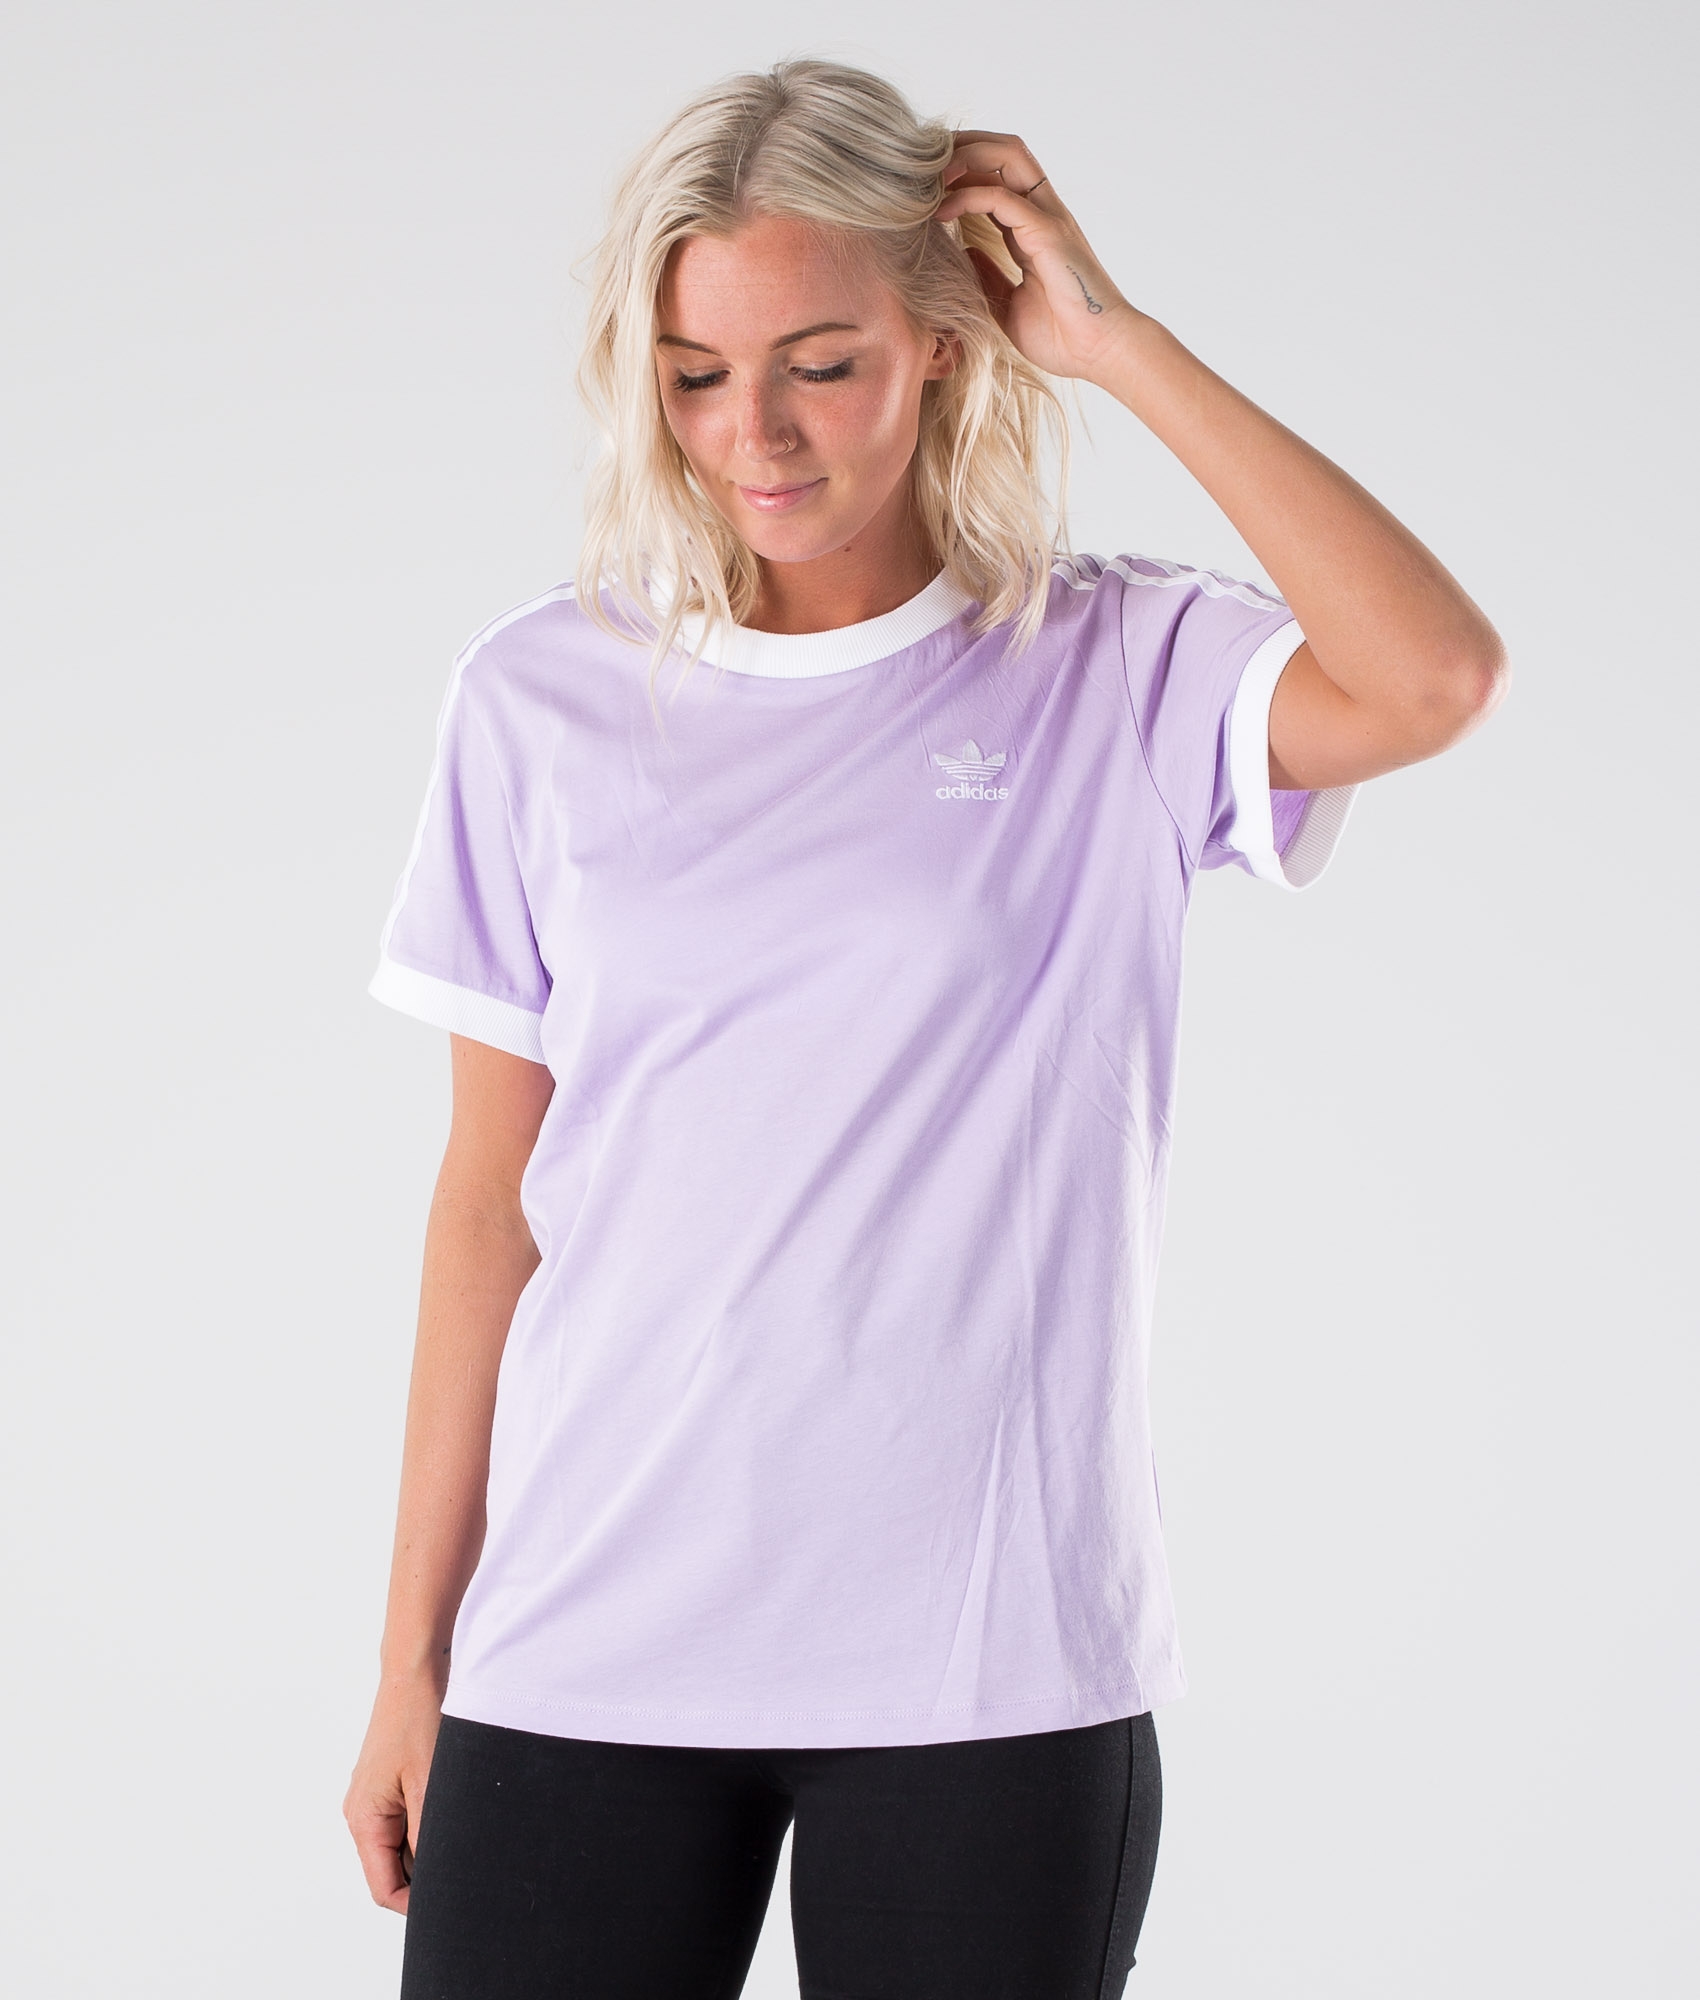 lilac adidas tshirt